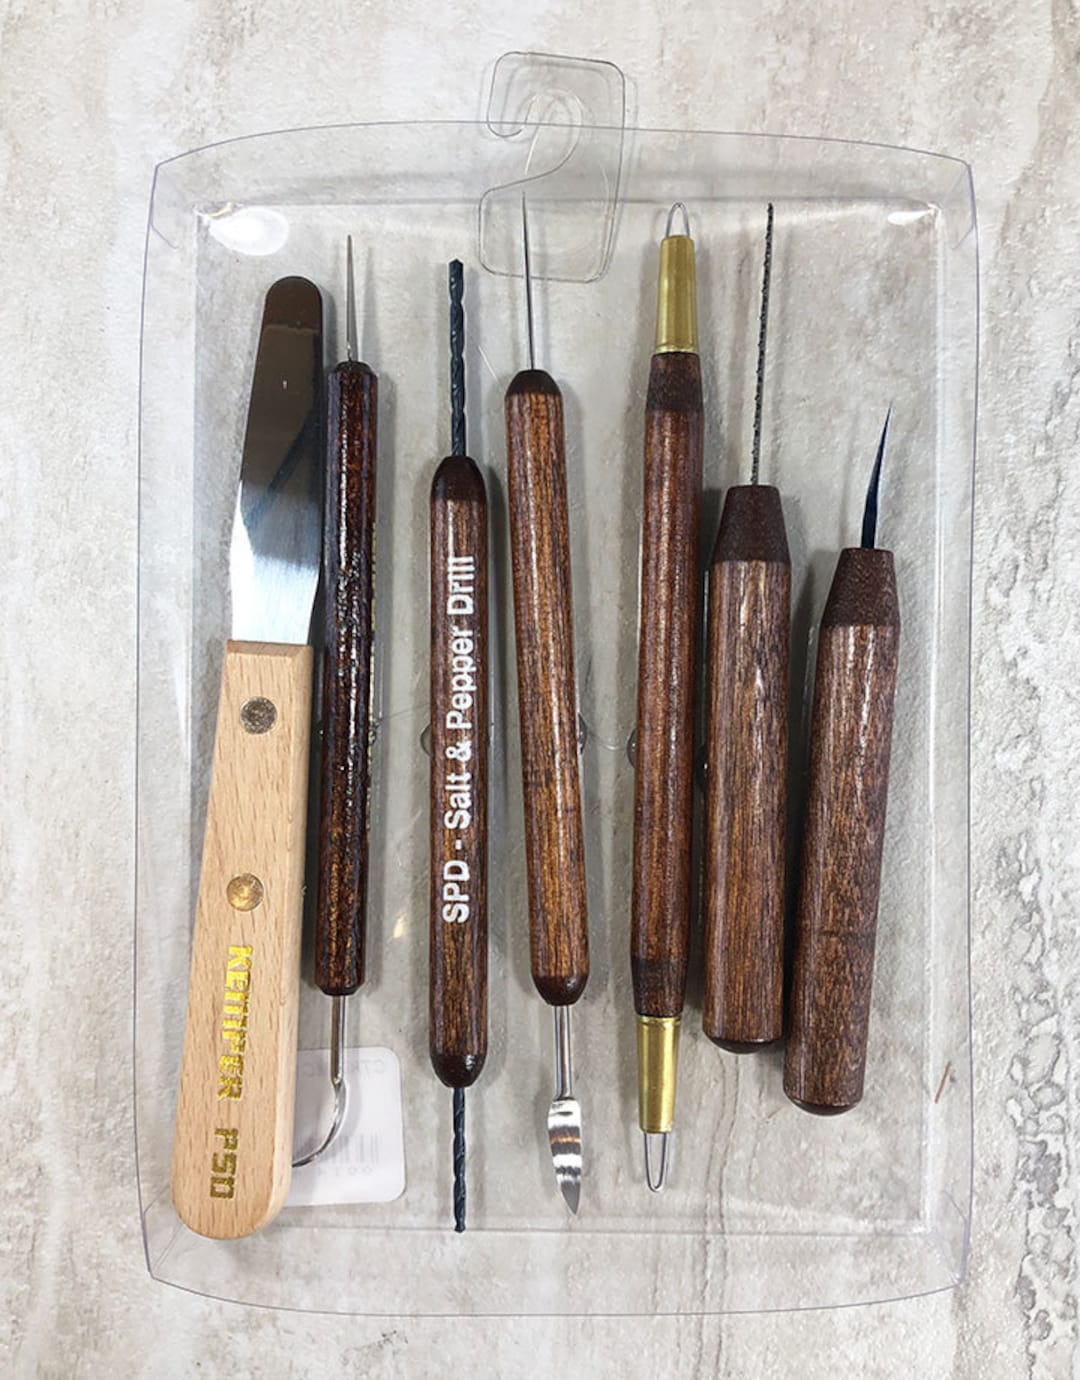 Kemper Ceramic Tool Kit (Set of 7)